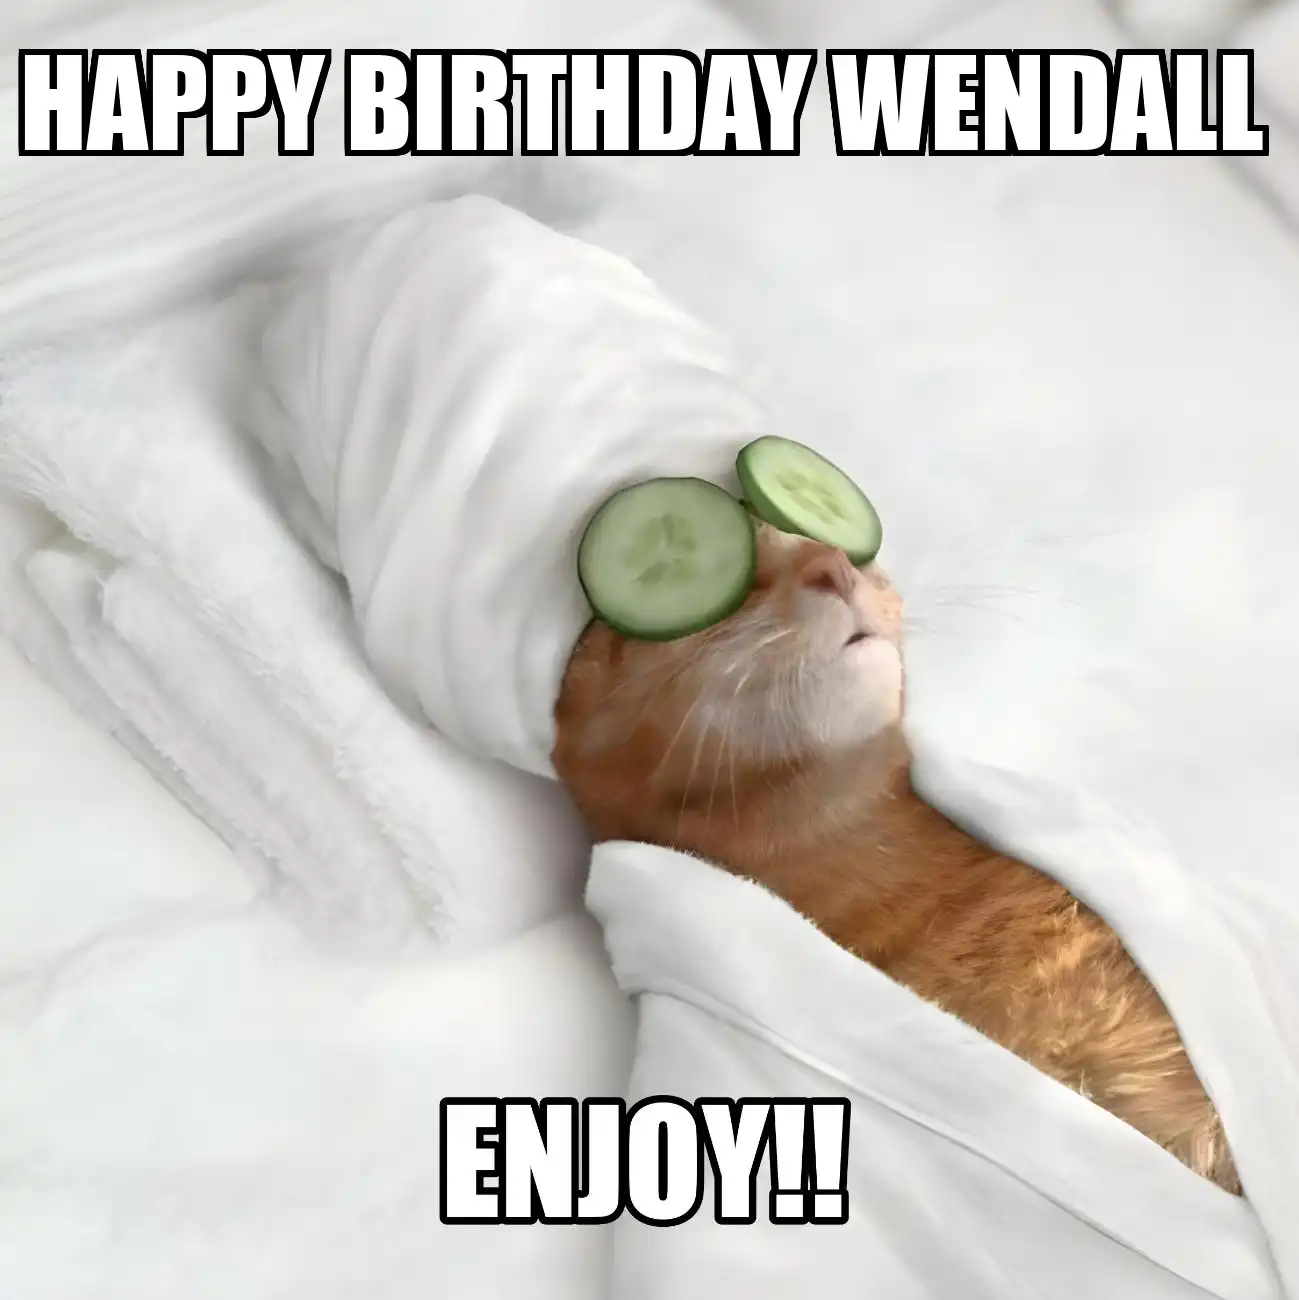 Happy Birthday Wendall Enjoy Cat Meme